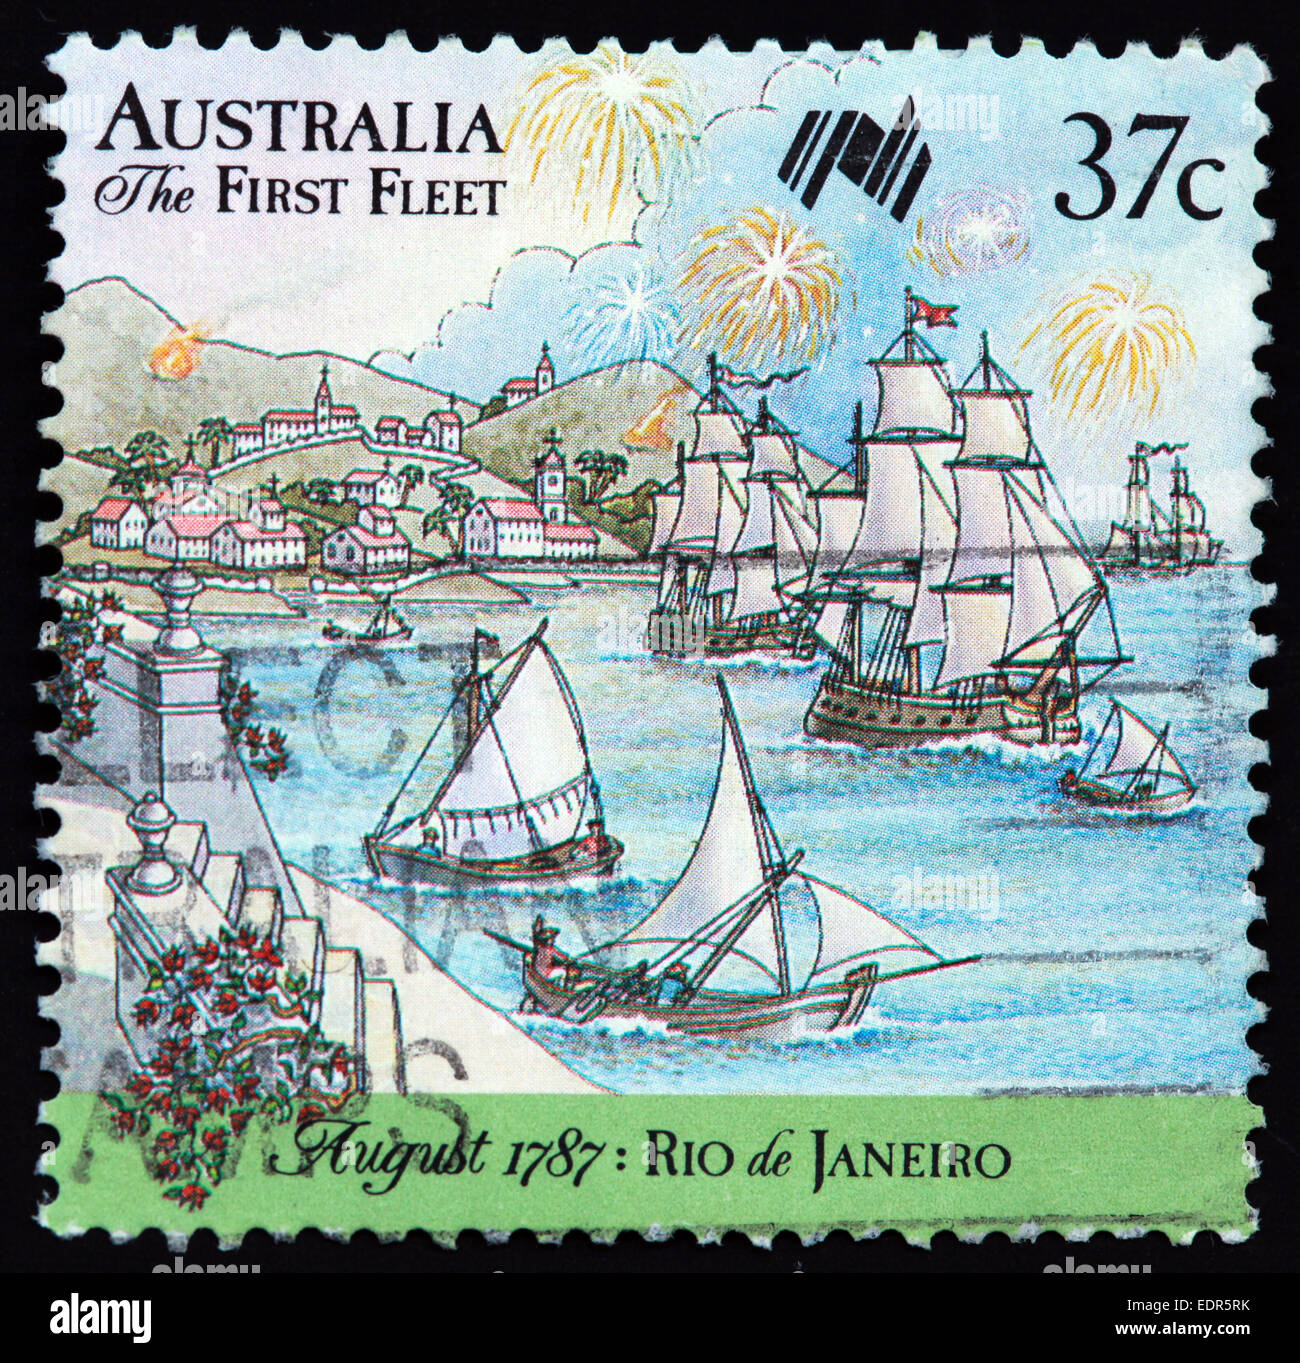 Usato e con timbro postale Australia / Timbro Austrailian 37c la prima flotta Agosto 1787 Rio de Janeiro Foto Stock